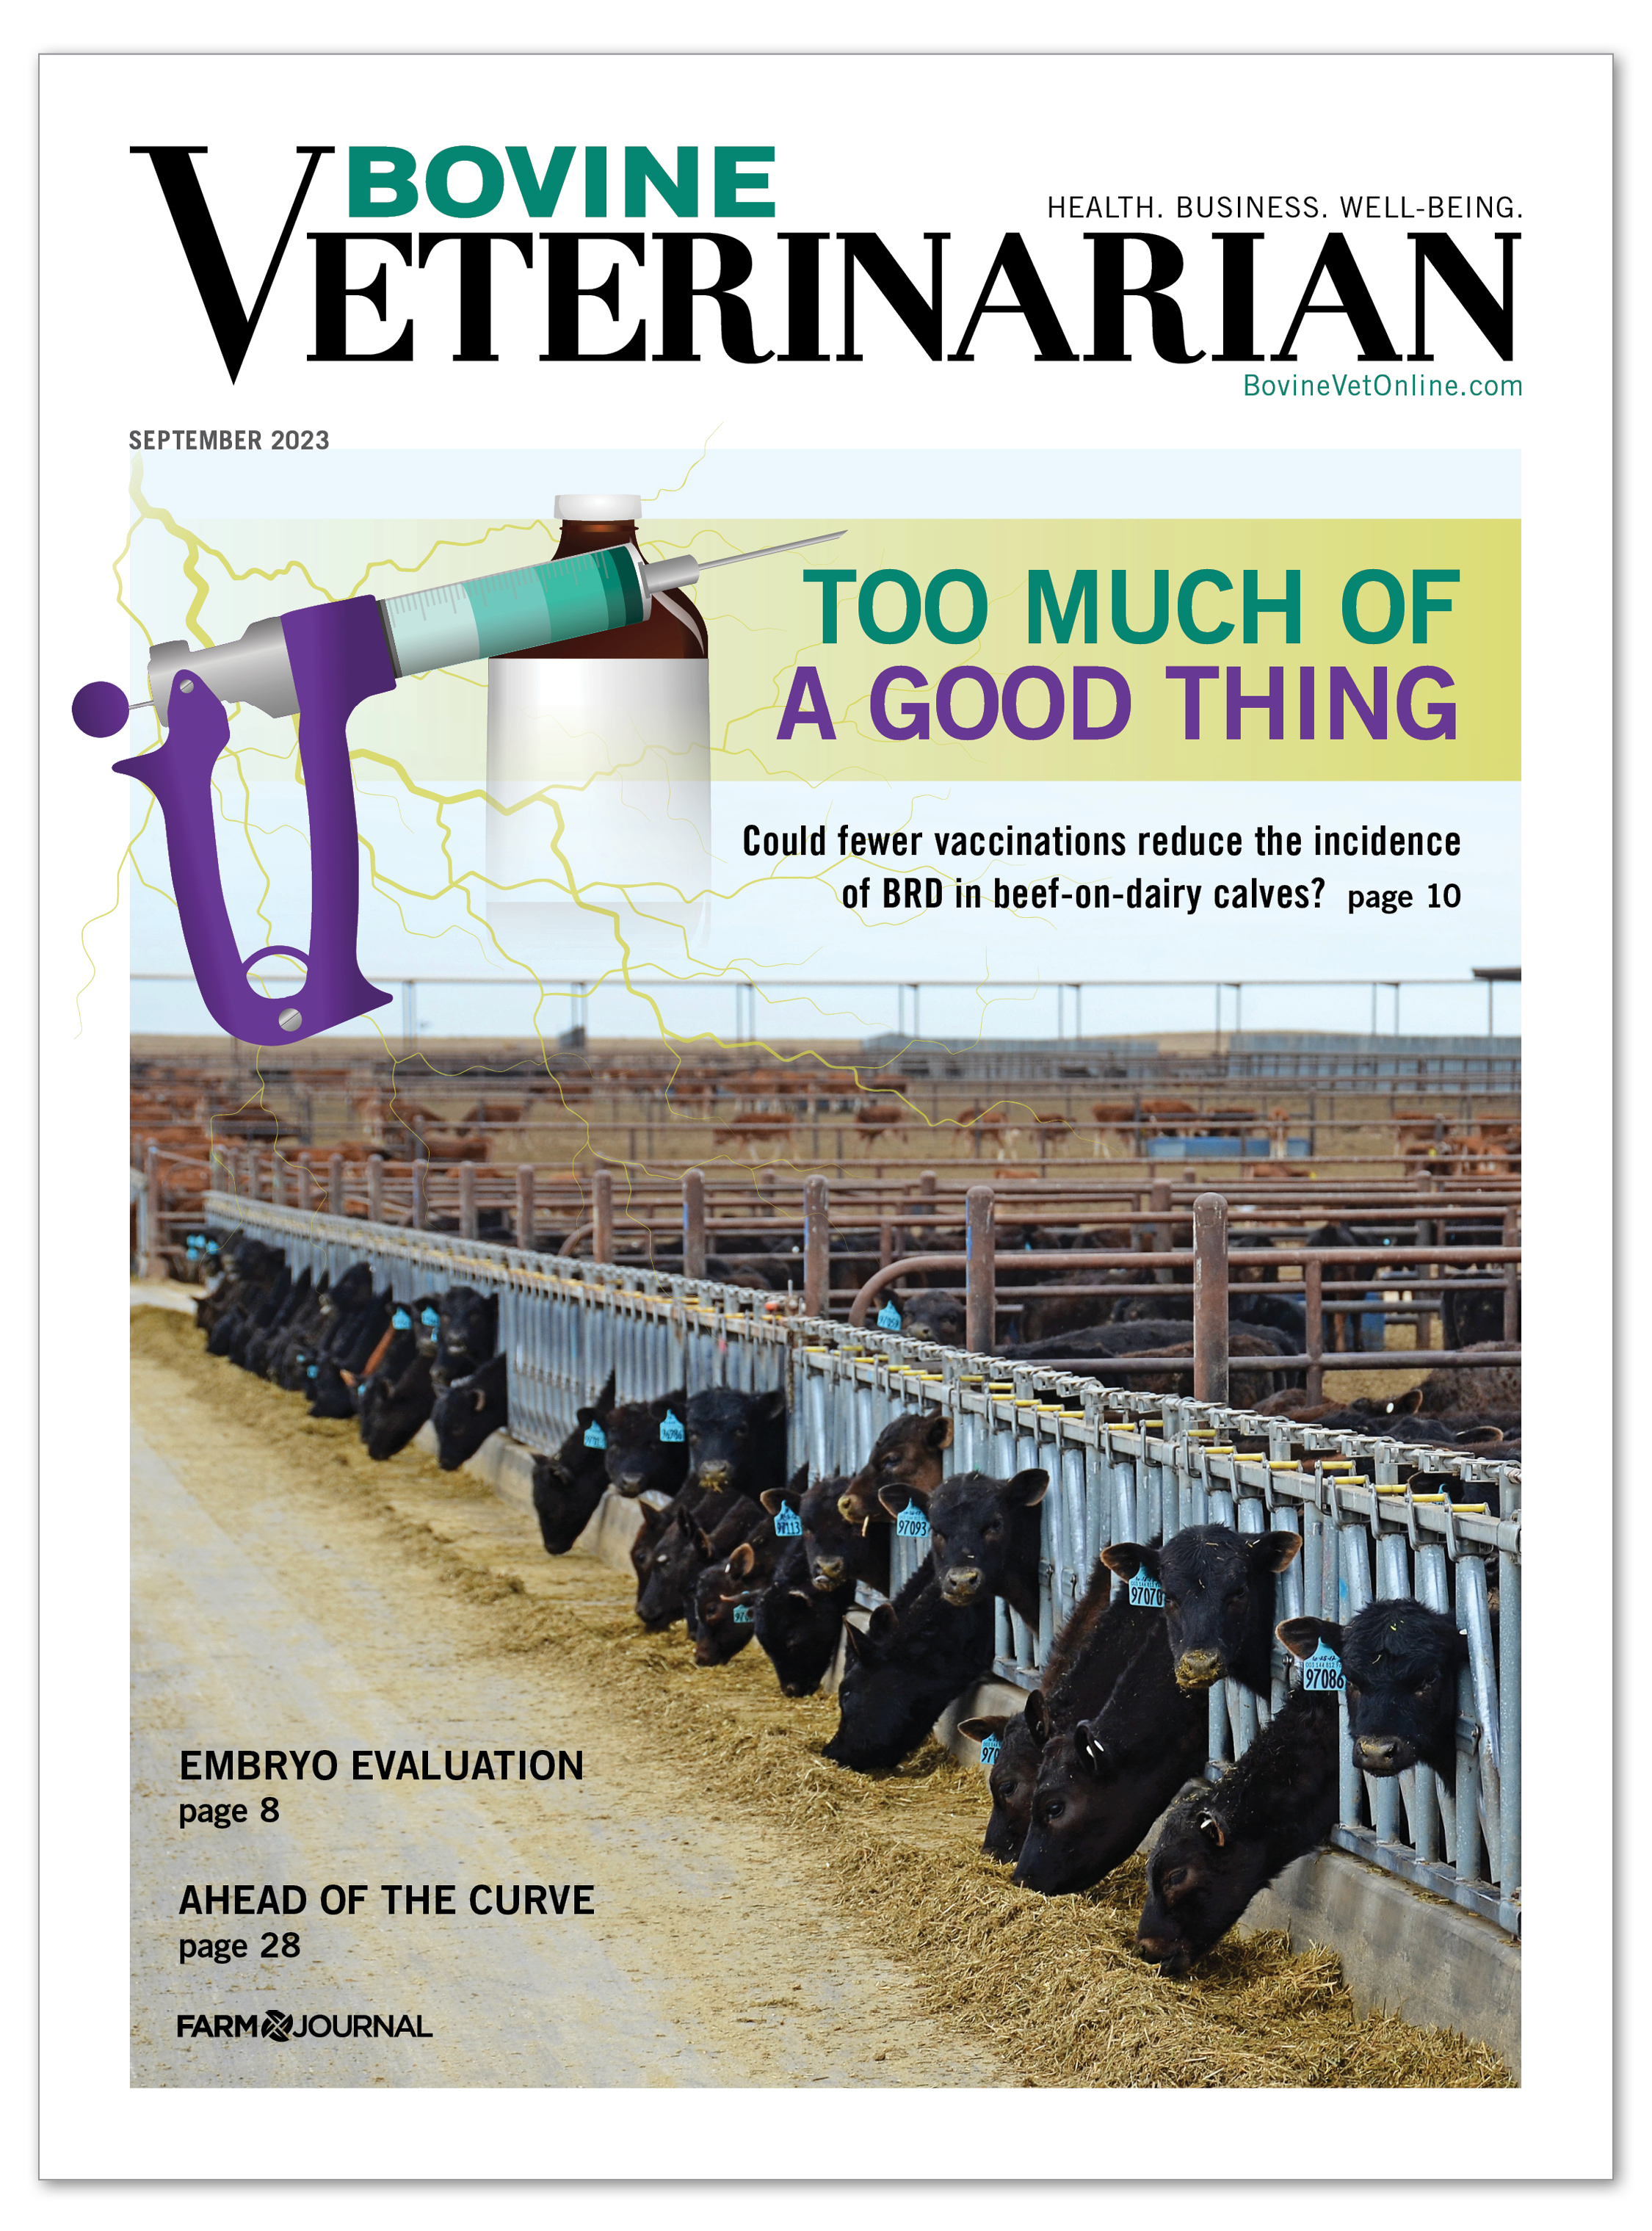  Bovine Veterinarian - September 2023 Cover 